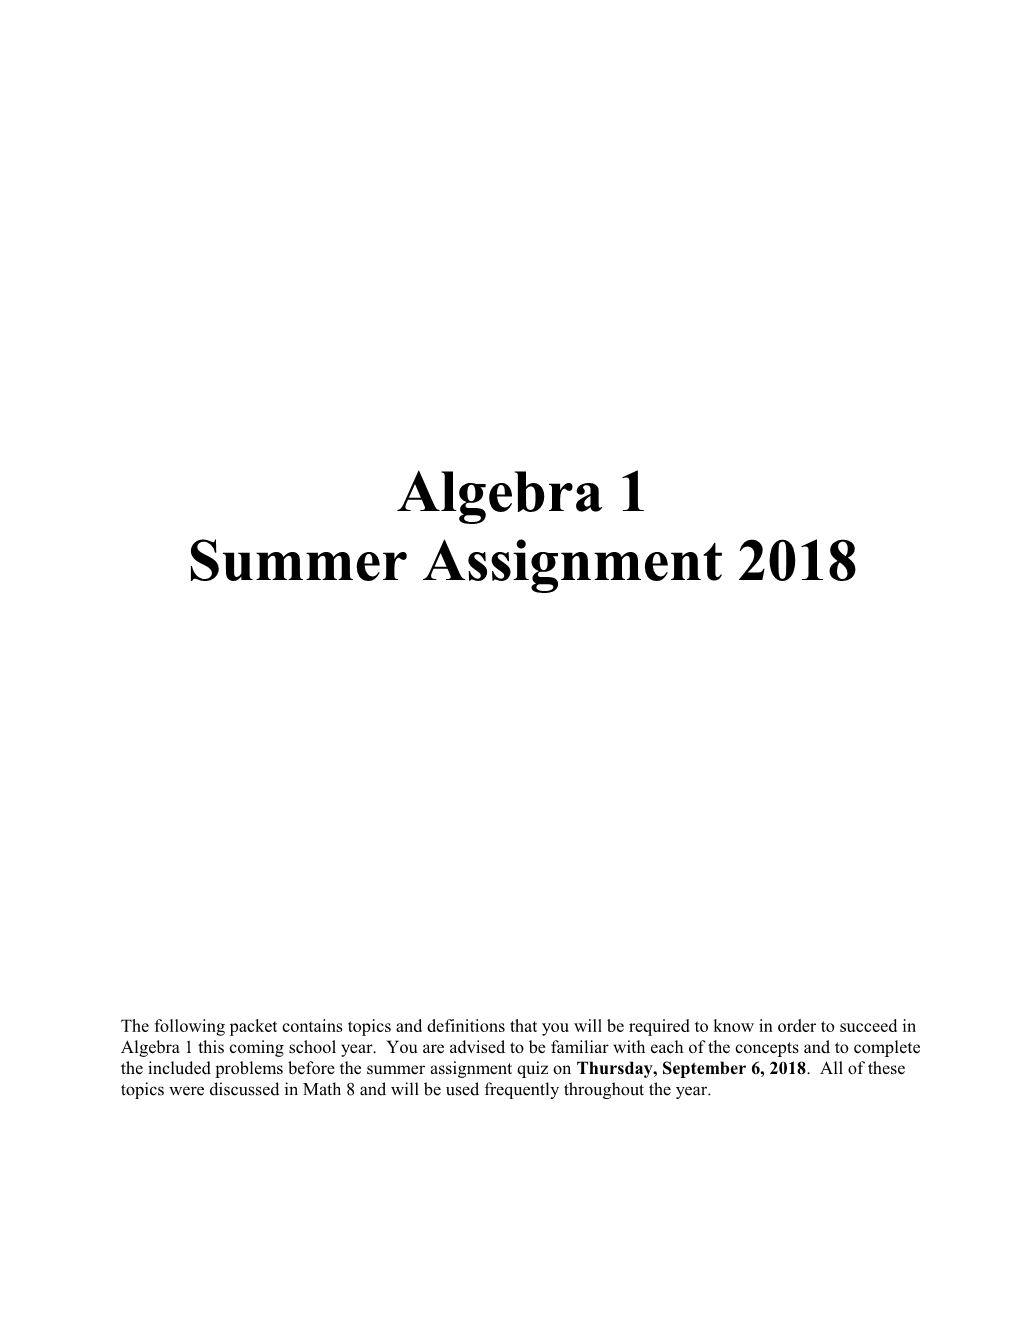 Summer Assignment 2018